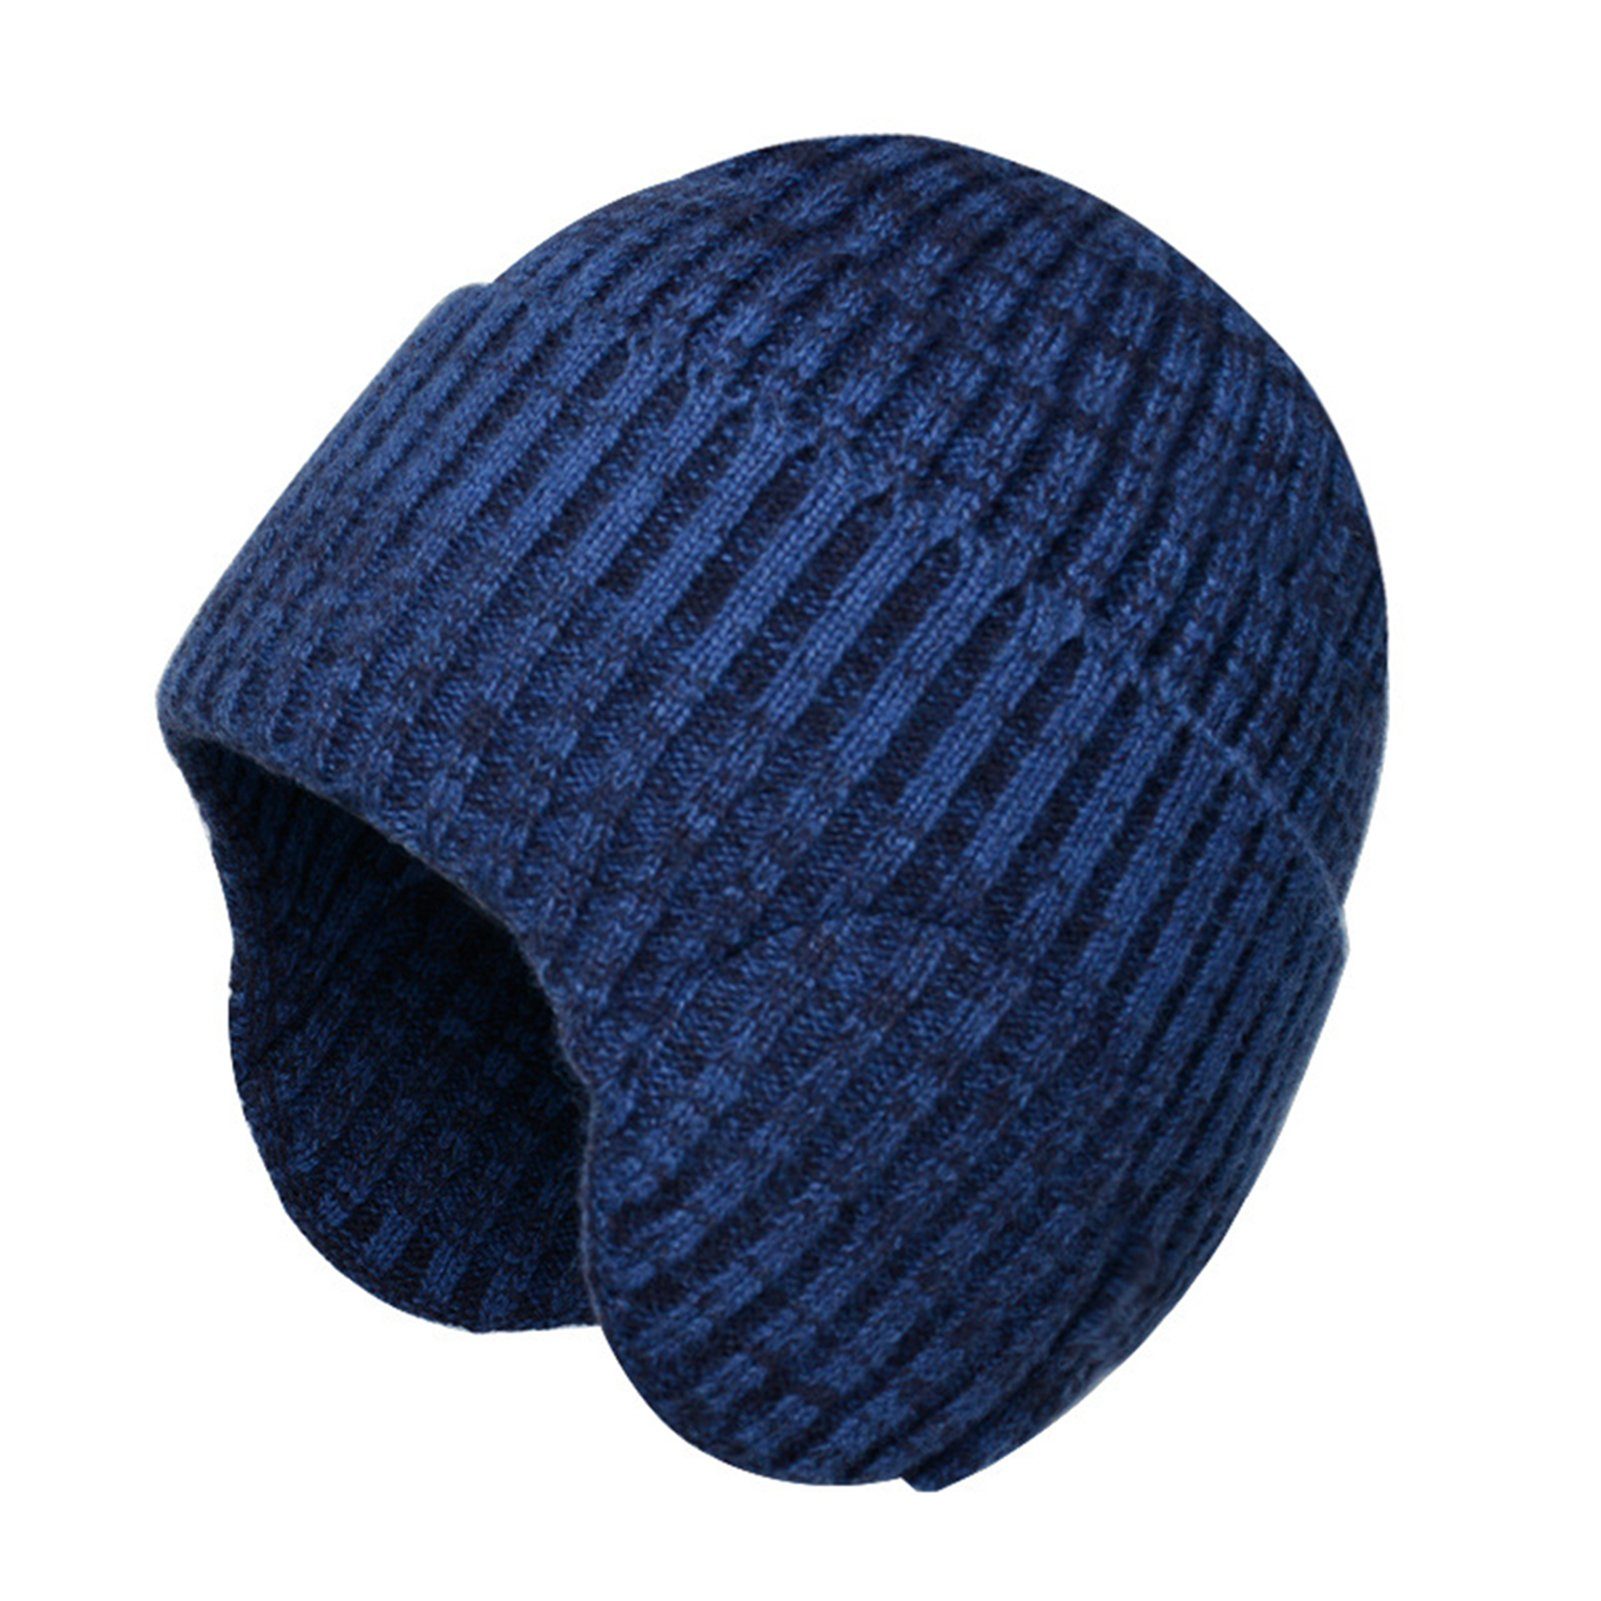 Strickmütze Verdickte Damen Und Herren, Blau Blusmart Für Modische Gehörschutz-Strickmütze